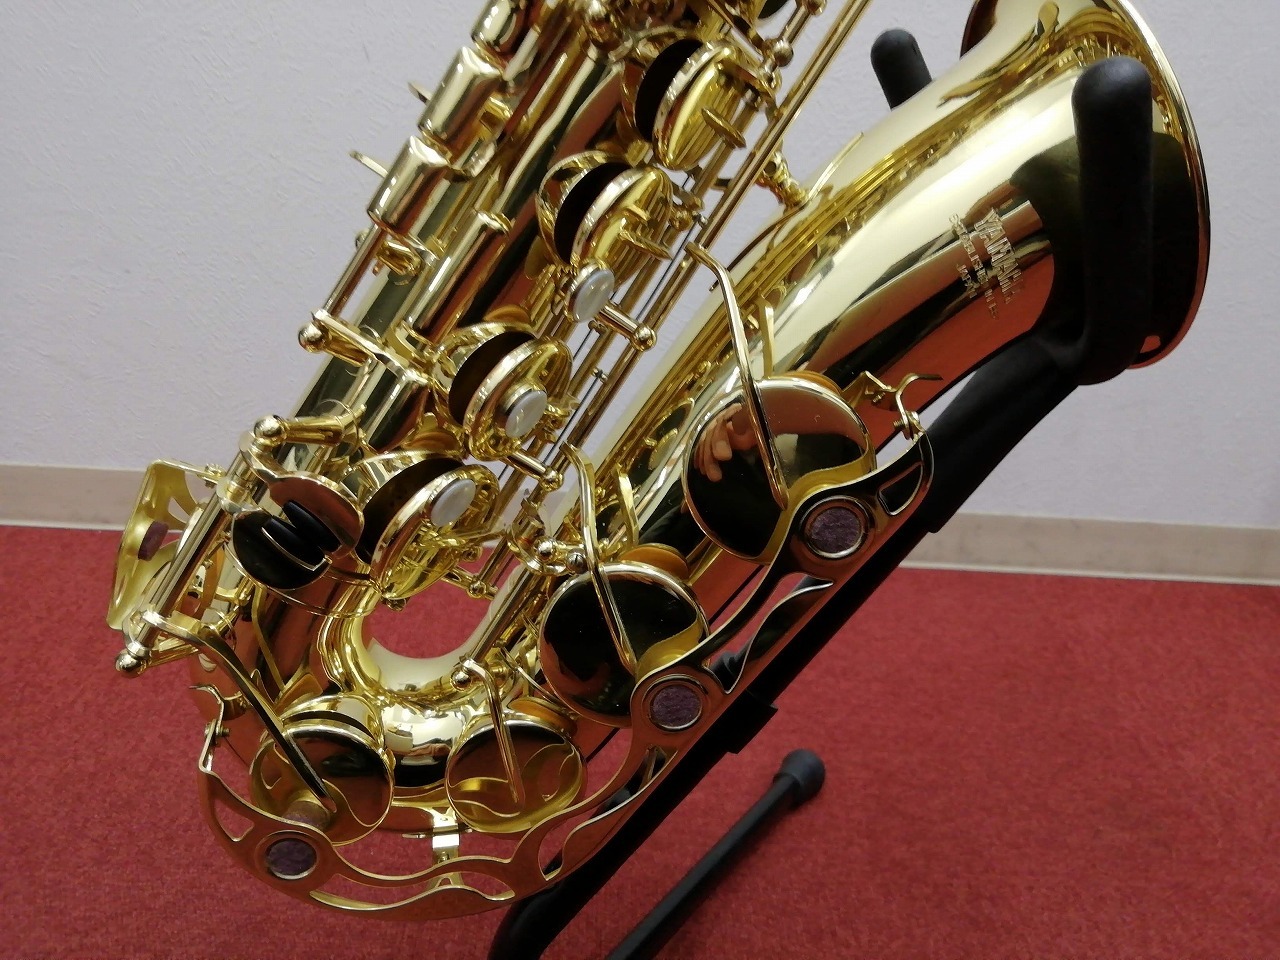 ヤマハ アルトサックス YAS-32 ESTABLISHED IN 1887 - 管楽器